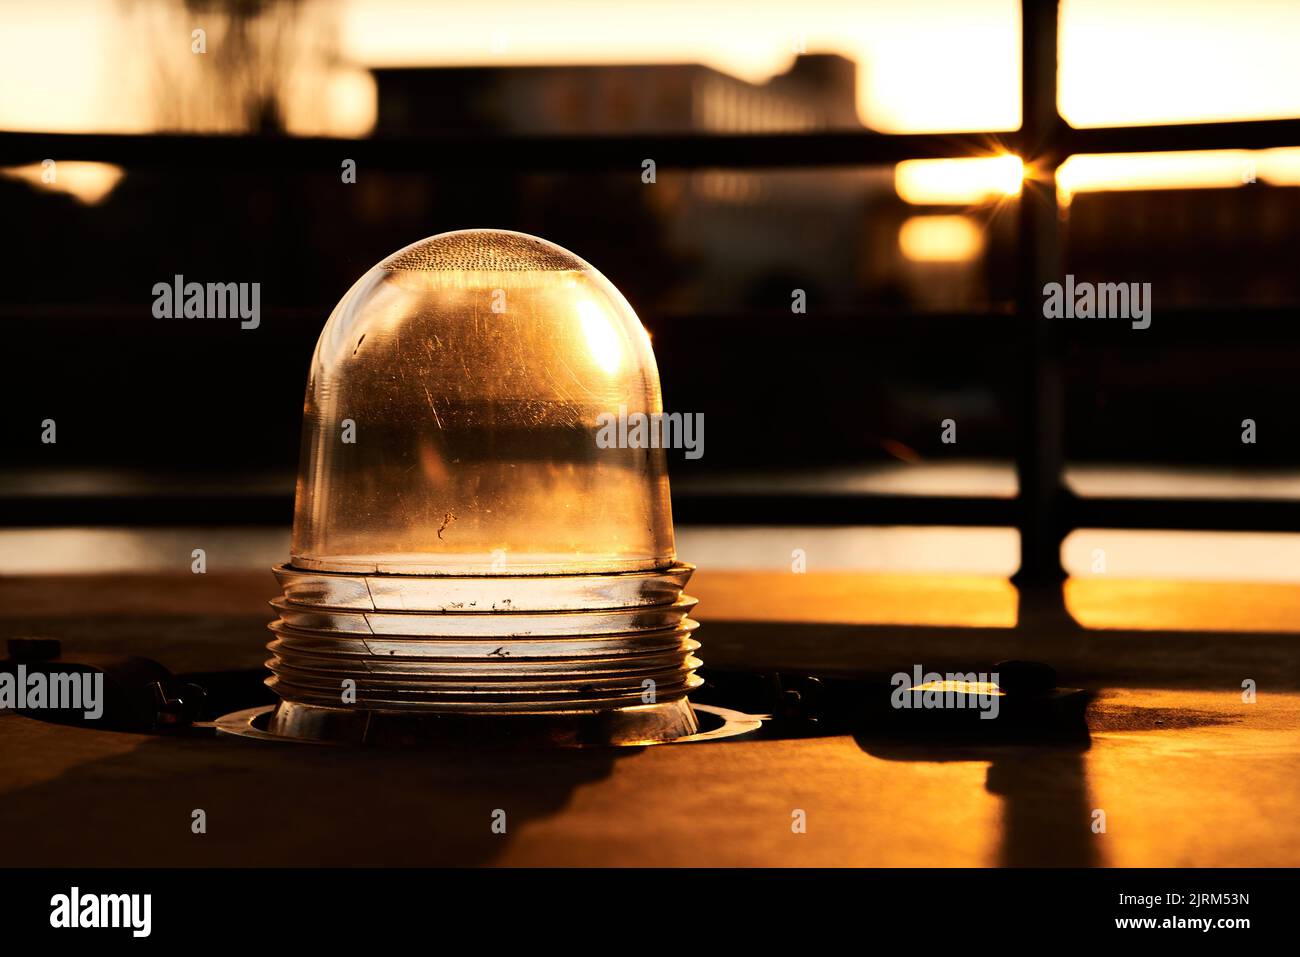 Eine Nahaufnahme eines Glasplatten für Lampe mit Sonnenuntergang Hintergrund Stockfoto